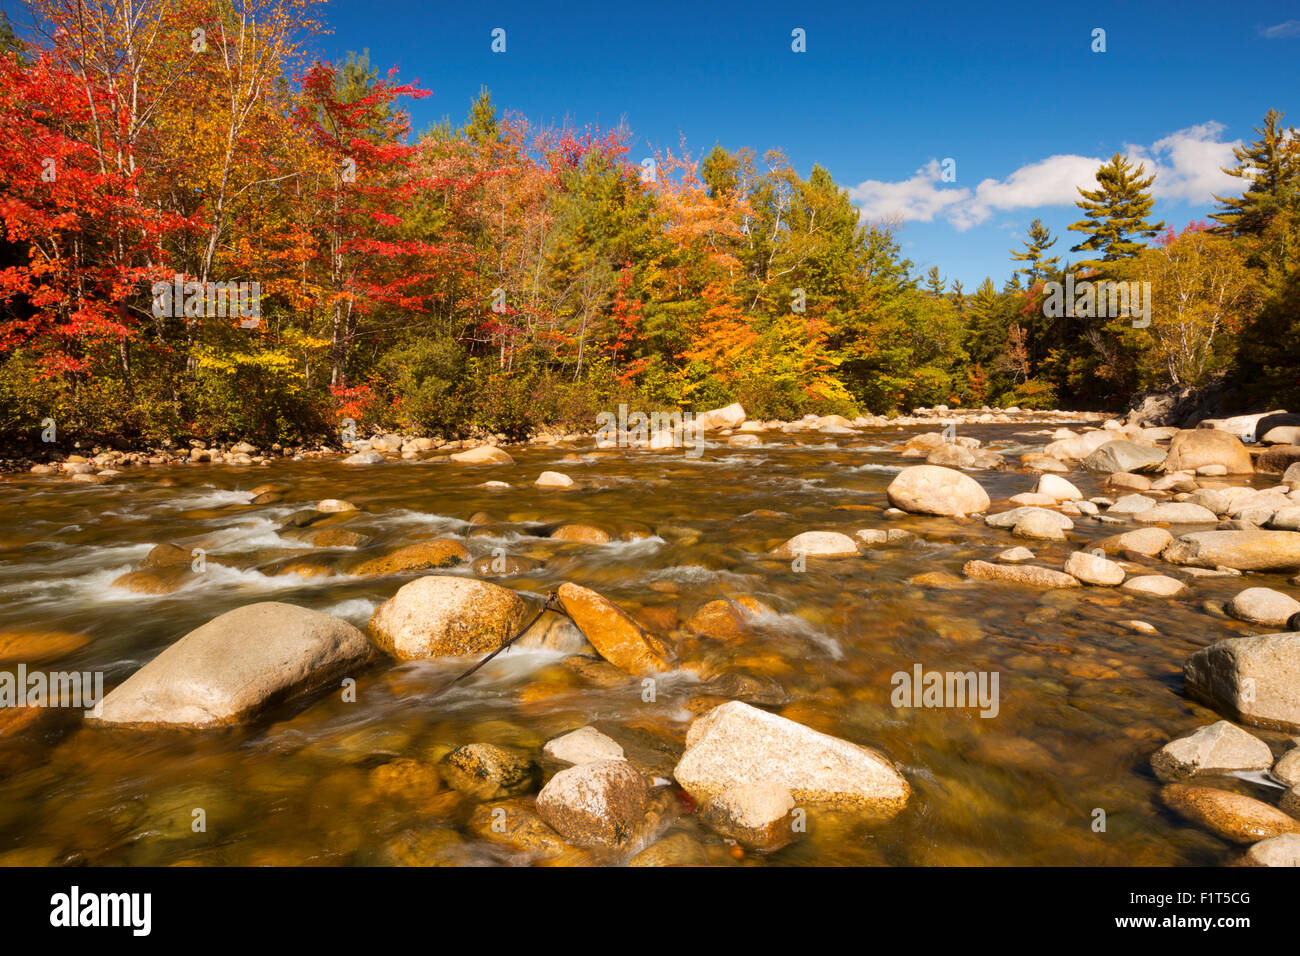 El follaje de otoño multicolor a lo largo de un río. Fotografiado en el río Swift, White Mountain National Forest en New Hampshire, EE.UU. Foto de stock